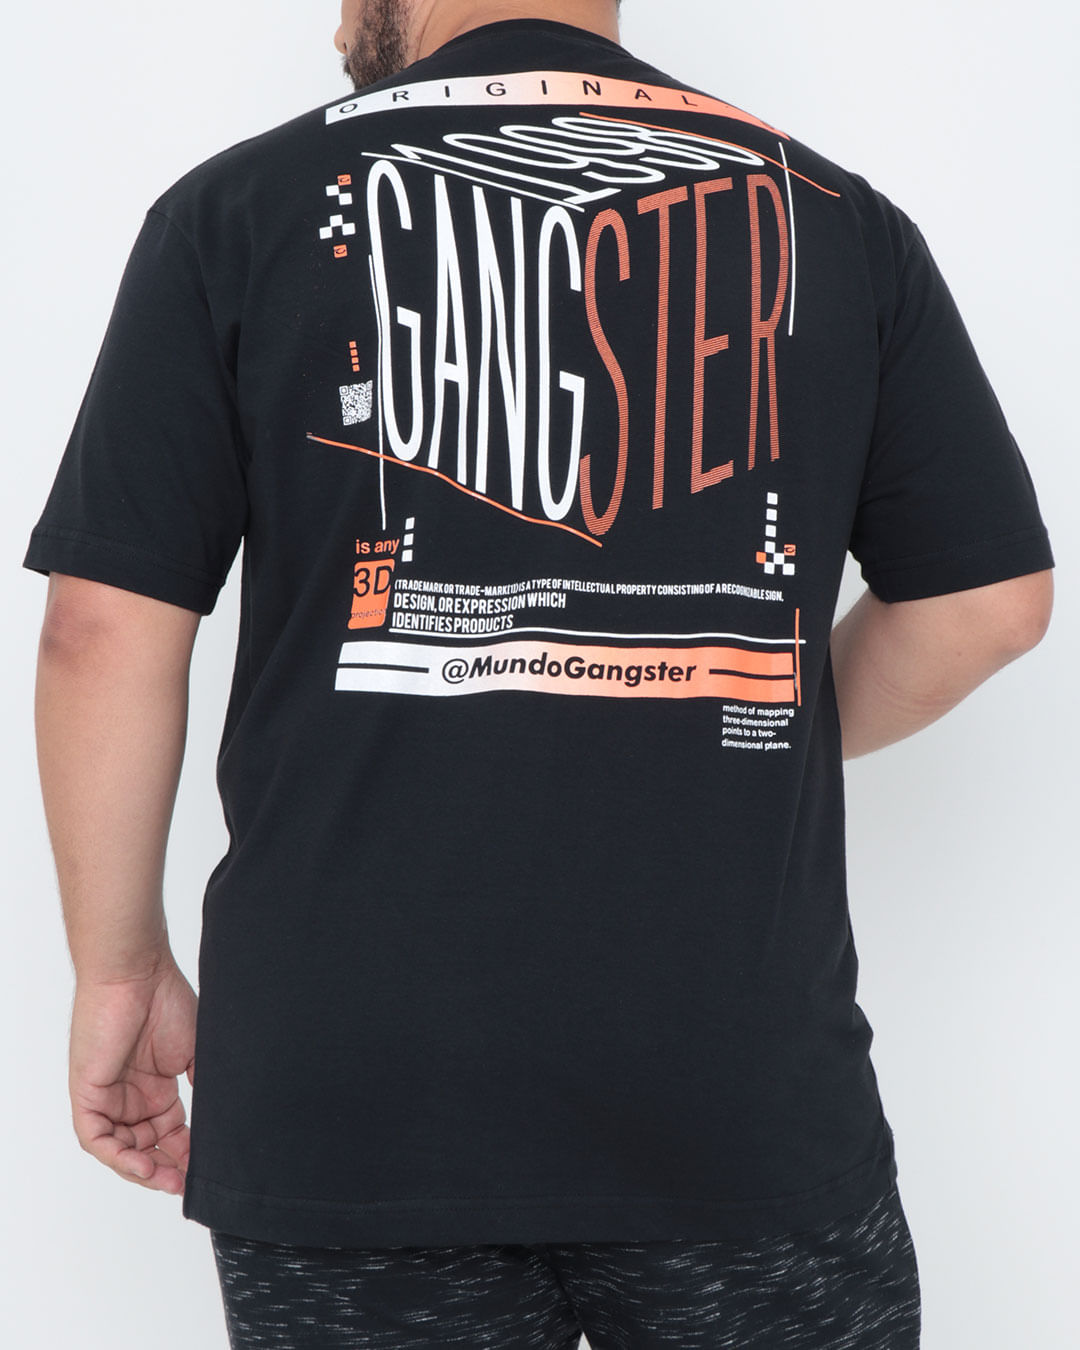 Camiseta-Plus-Size-Gangster-Estampa-Preta